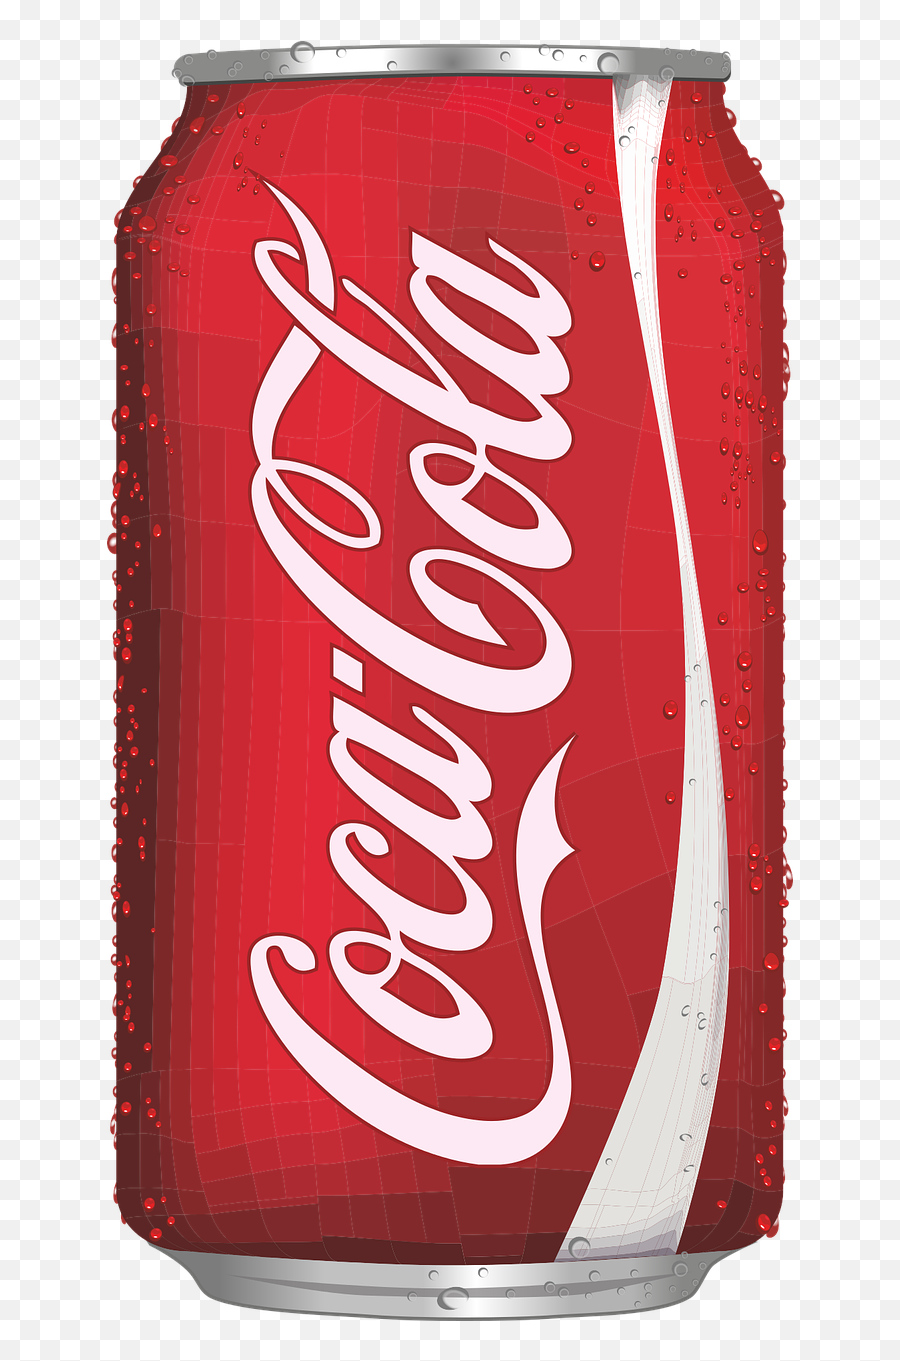 Tail Soft Drink Mockup Coca - Free Vector Graphic On Pixabay Coca Cola Cans Emoji,Coke A Cola Emoticon Facebook